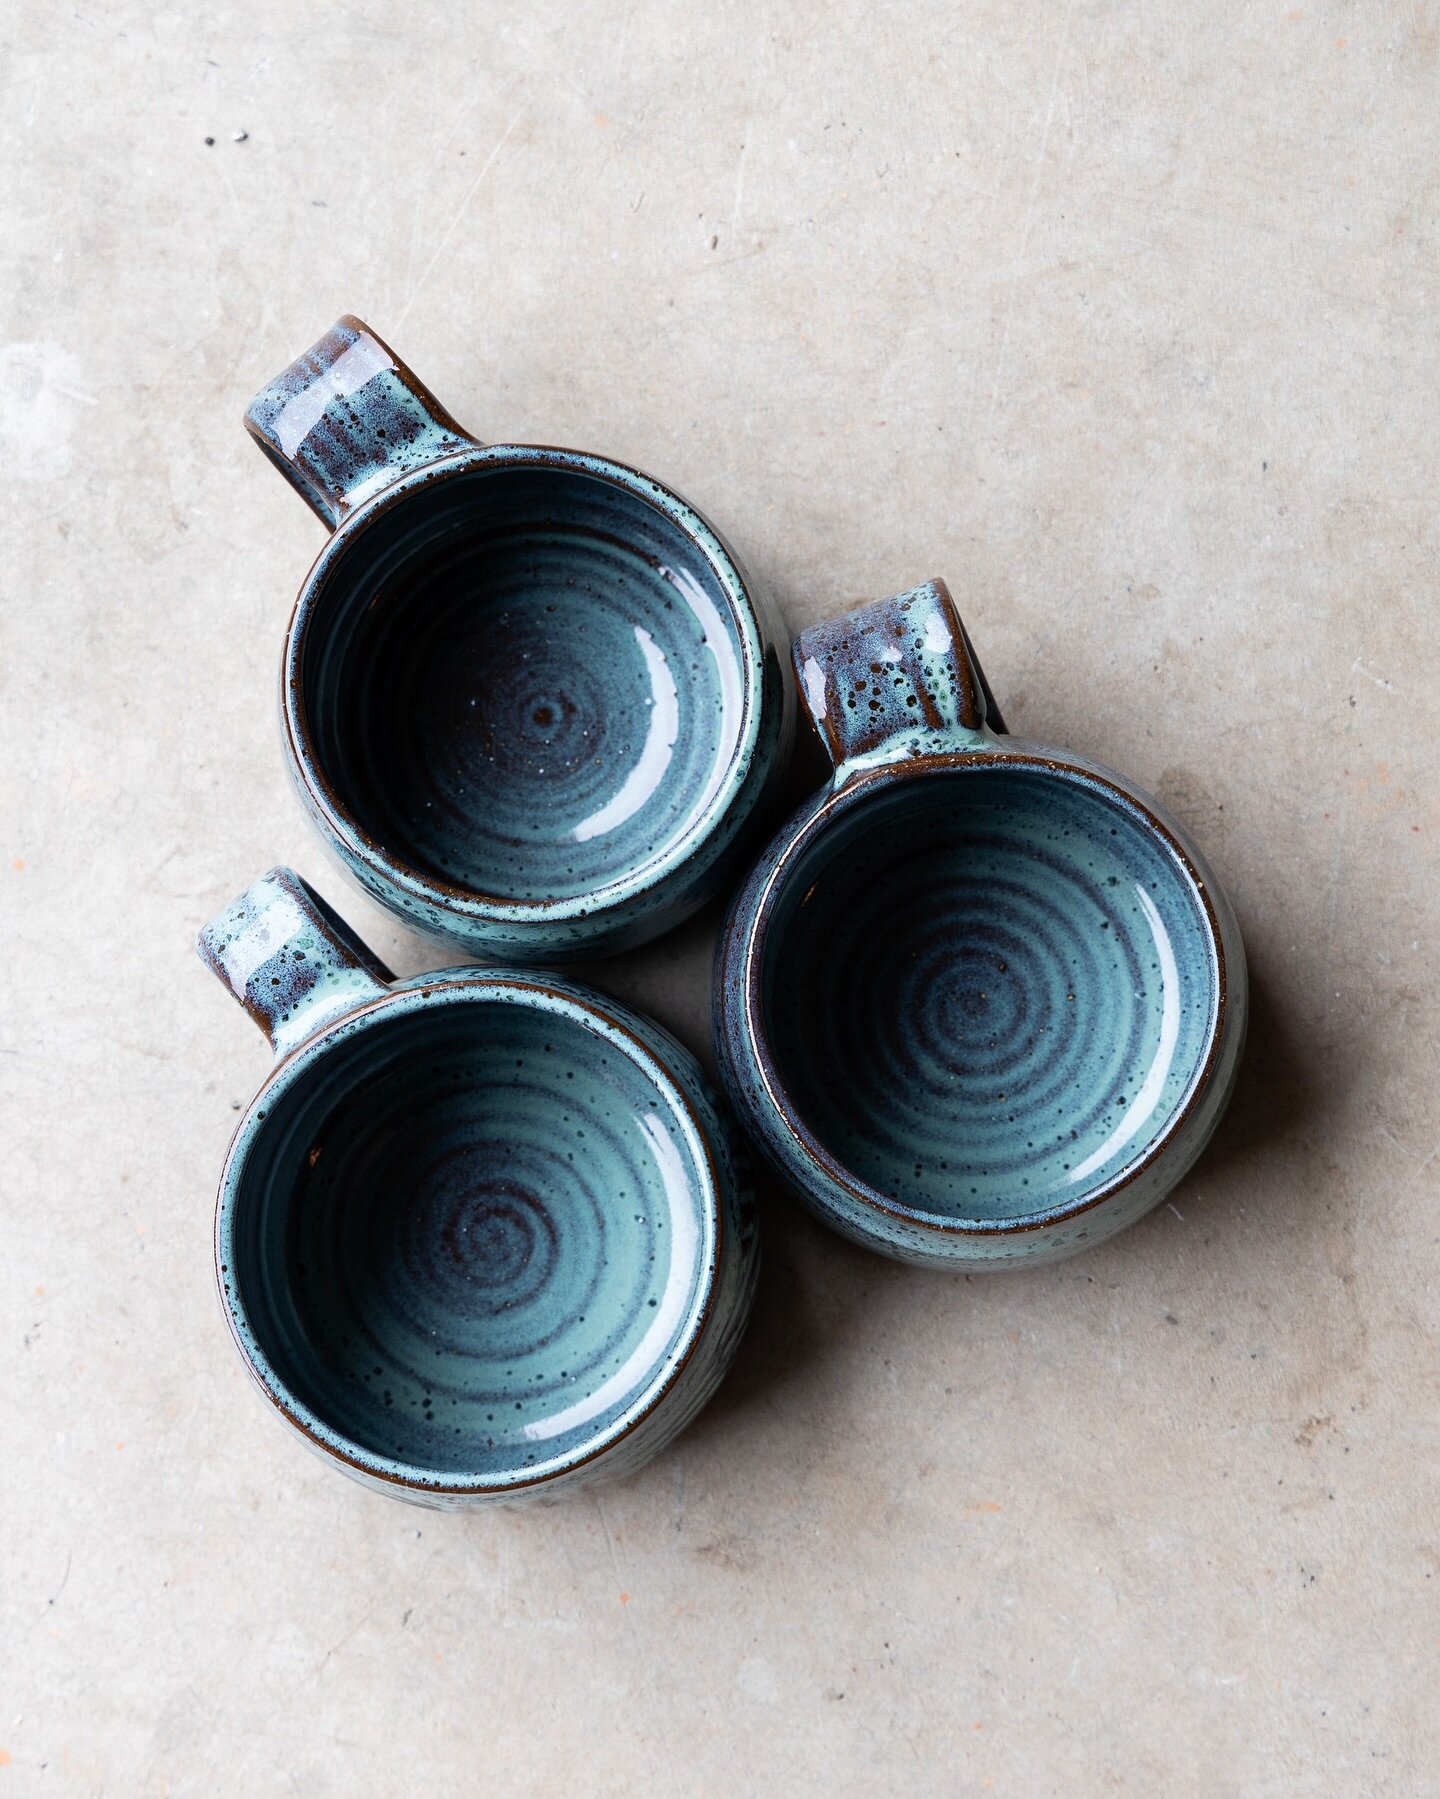 Mugs and swirls. 
Got some fun updates next week. Stay tuned!
.
.
.
 #makersgonnamake #potteryworld #createyourlife #pottersofinstagram #designerliner #becreative #ceramicartist